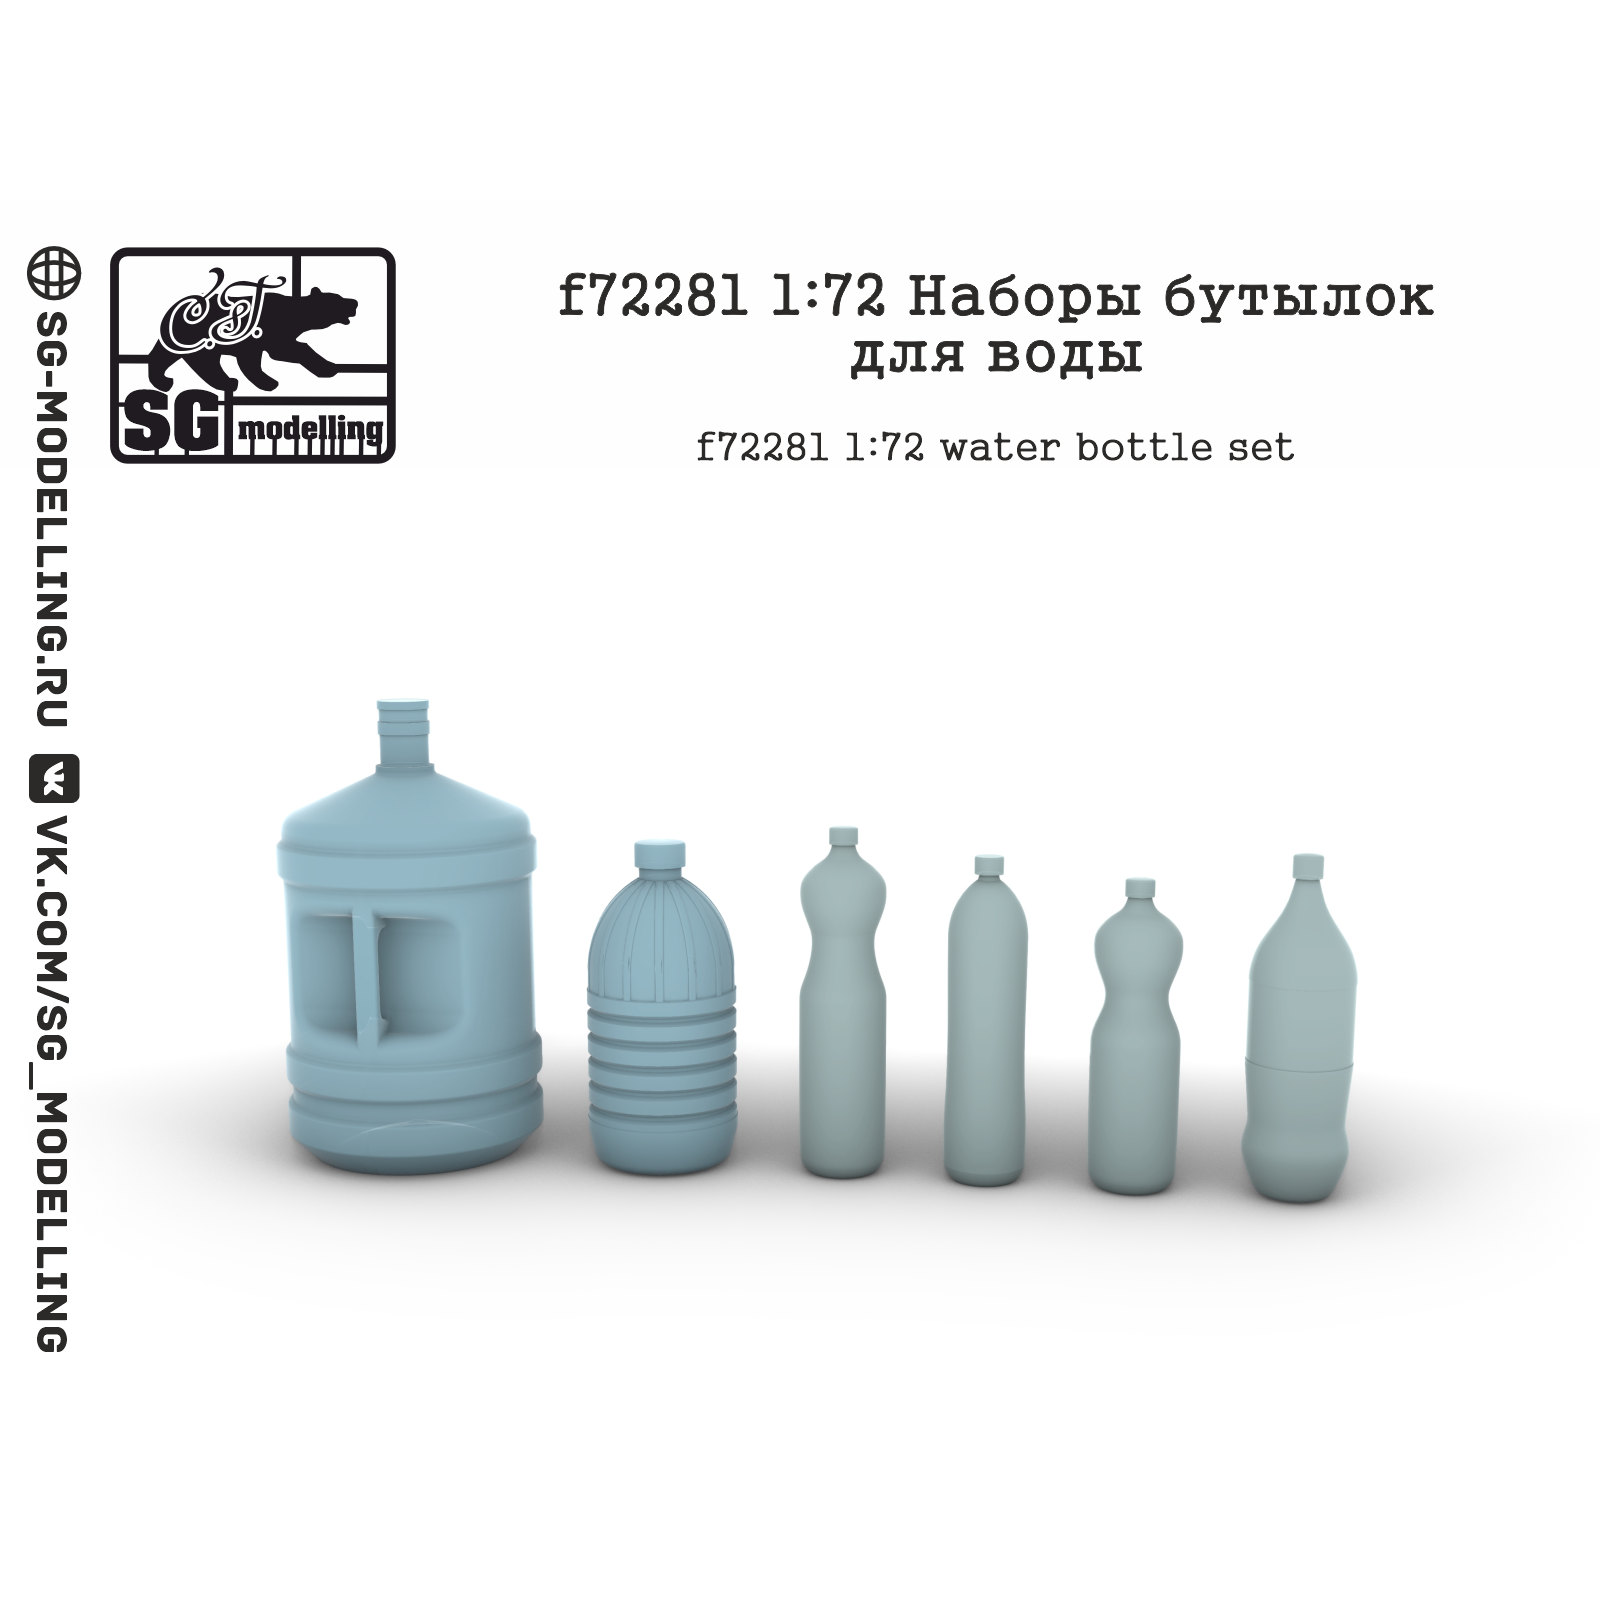 f72281  дополнения из смолы  Наборы бутылок для воды  (1:72)